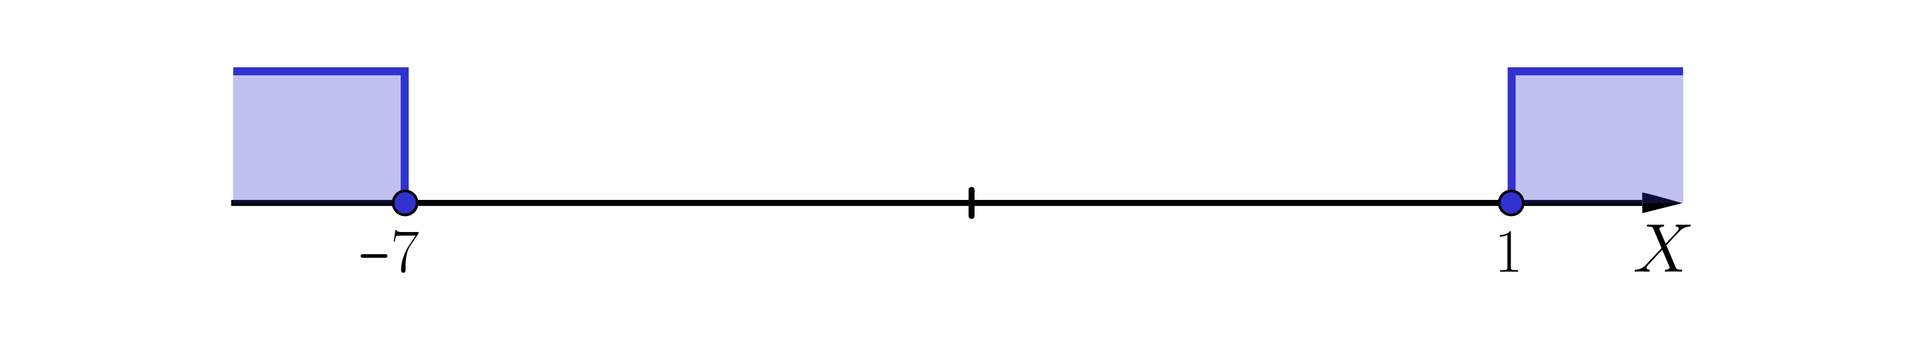 Ilustracja przedstawia poziomą oś X od minus siedmiu do jeden. Na osi zaznaczono dwa rozłączne przedziały. Pierwszy przedział jest prawostronnie domknięty od minus nieskończoności do minus siedmiu, drugi przedział jest lewostronnie domknięty od jeden do plus nieskończoności.